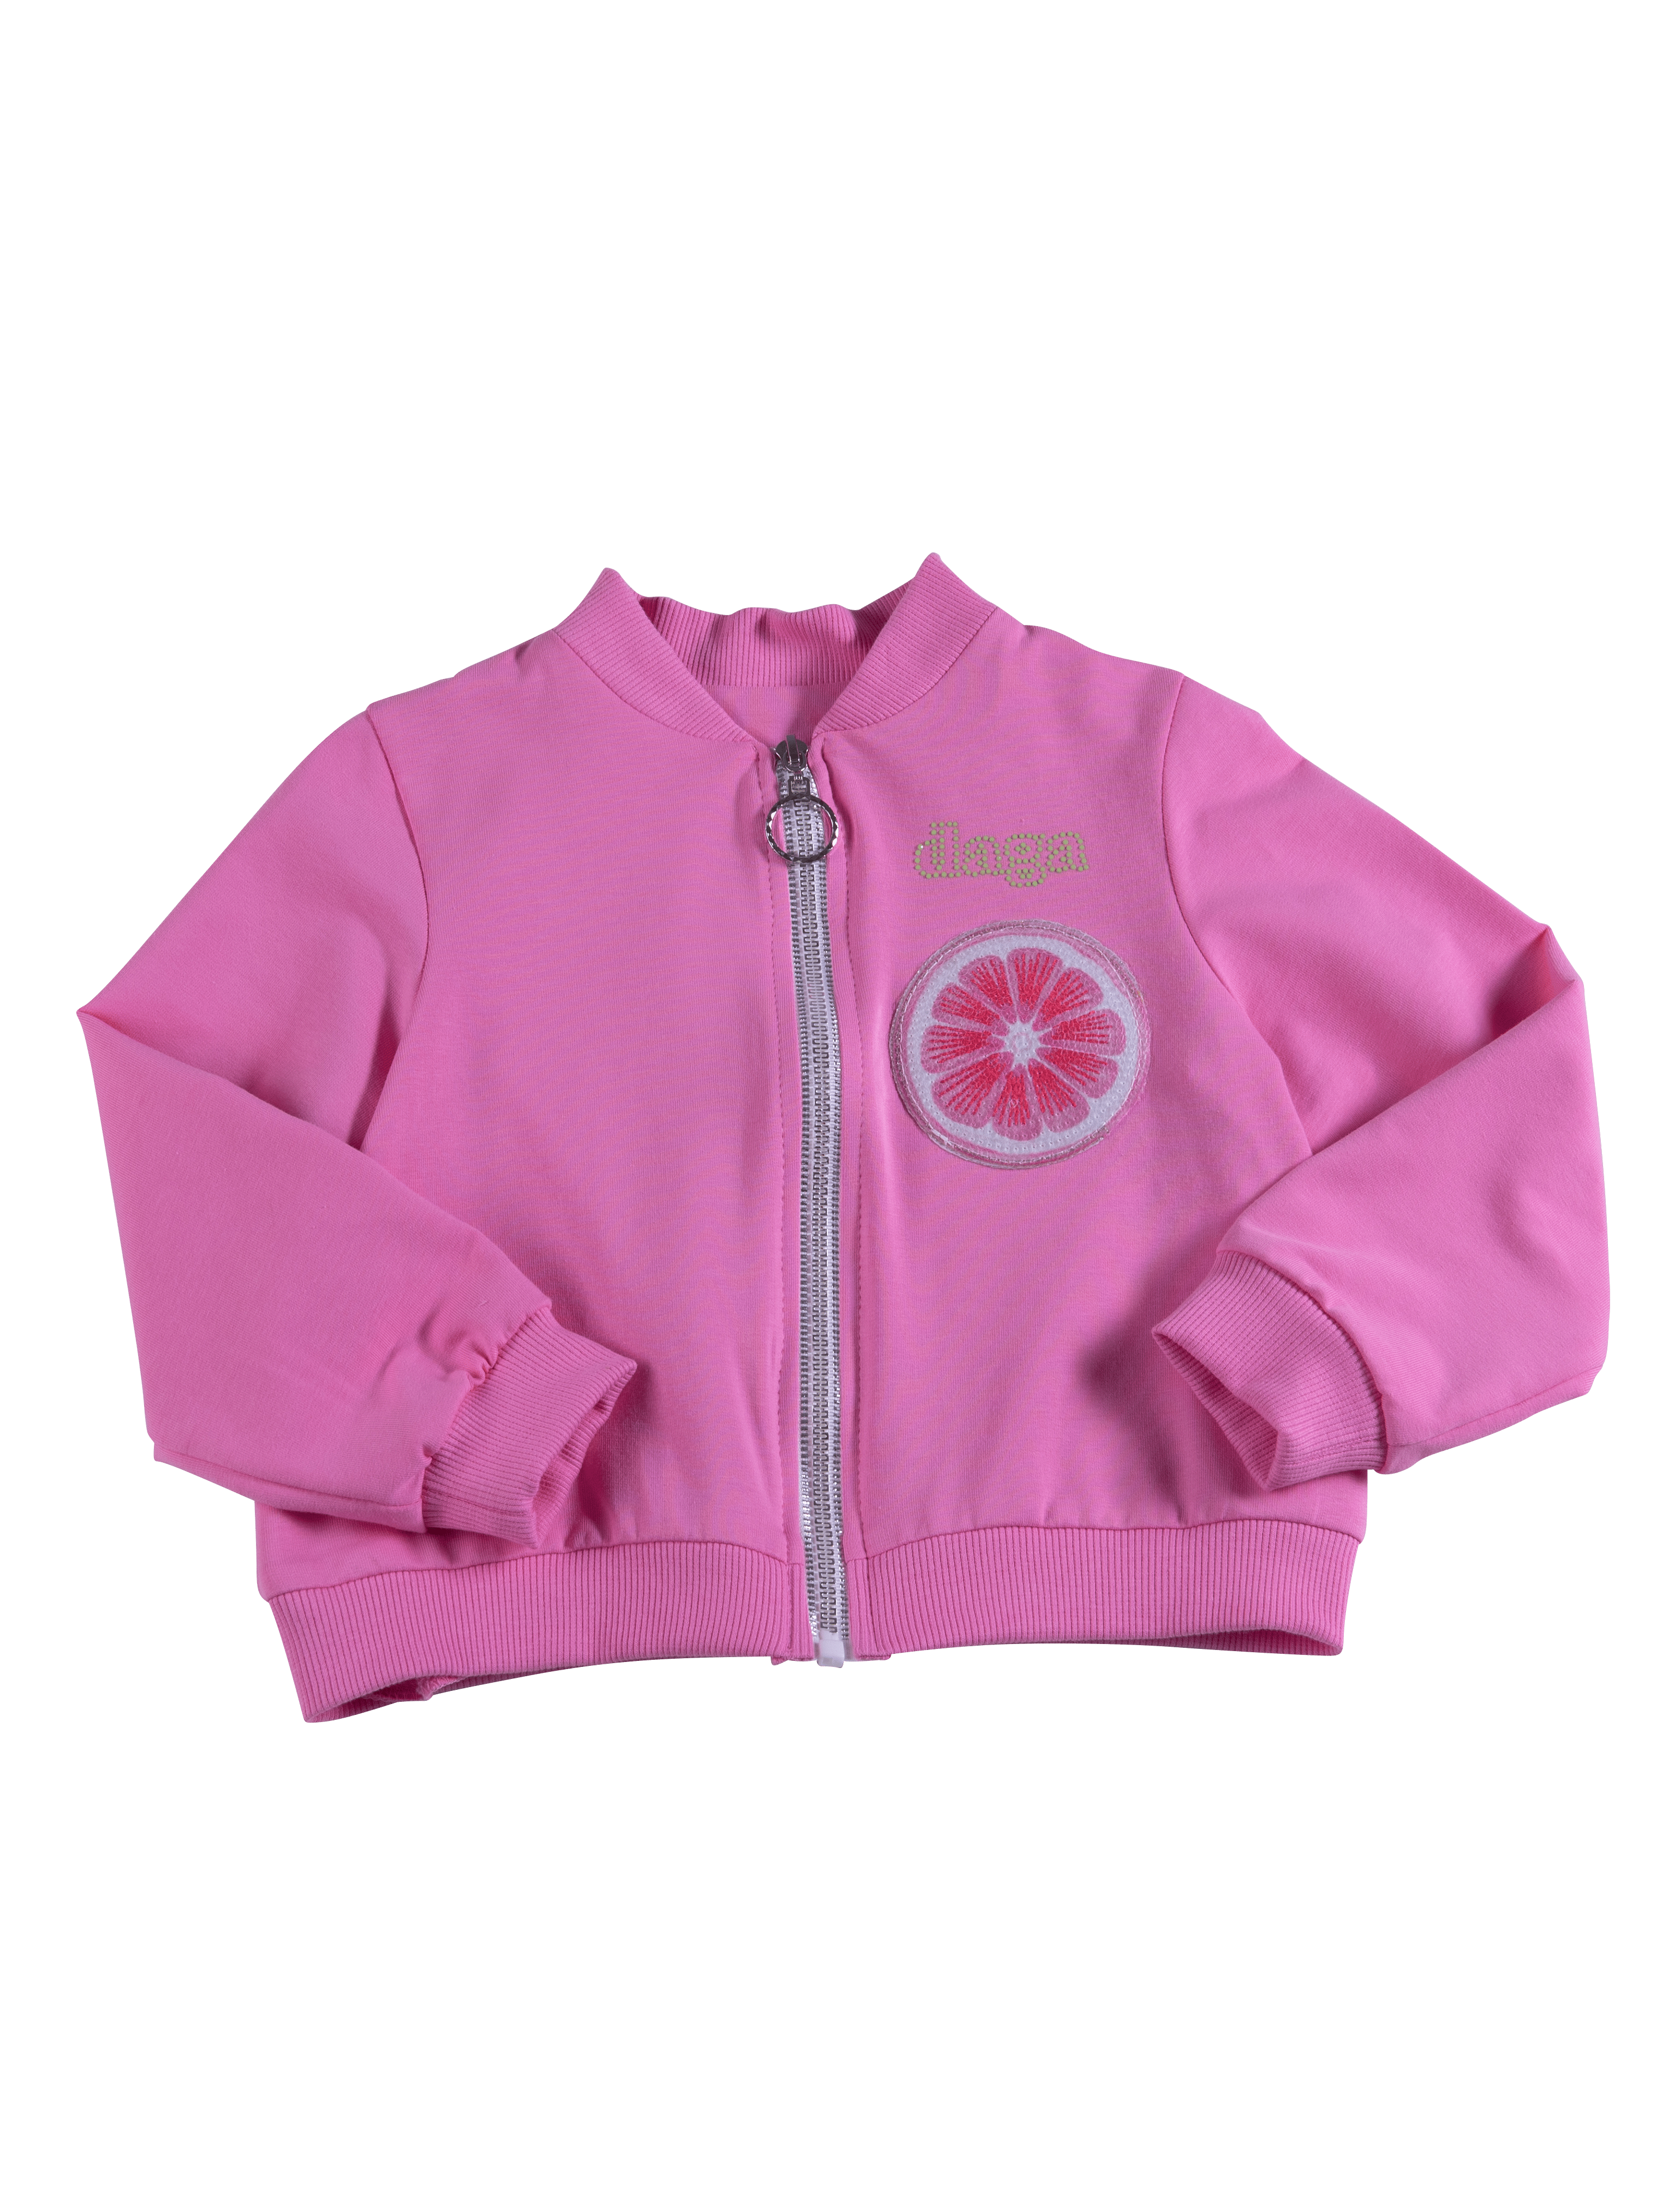 Daga - Lemon Power Jacket - Pink